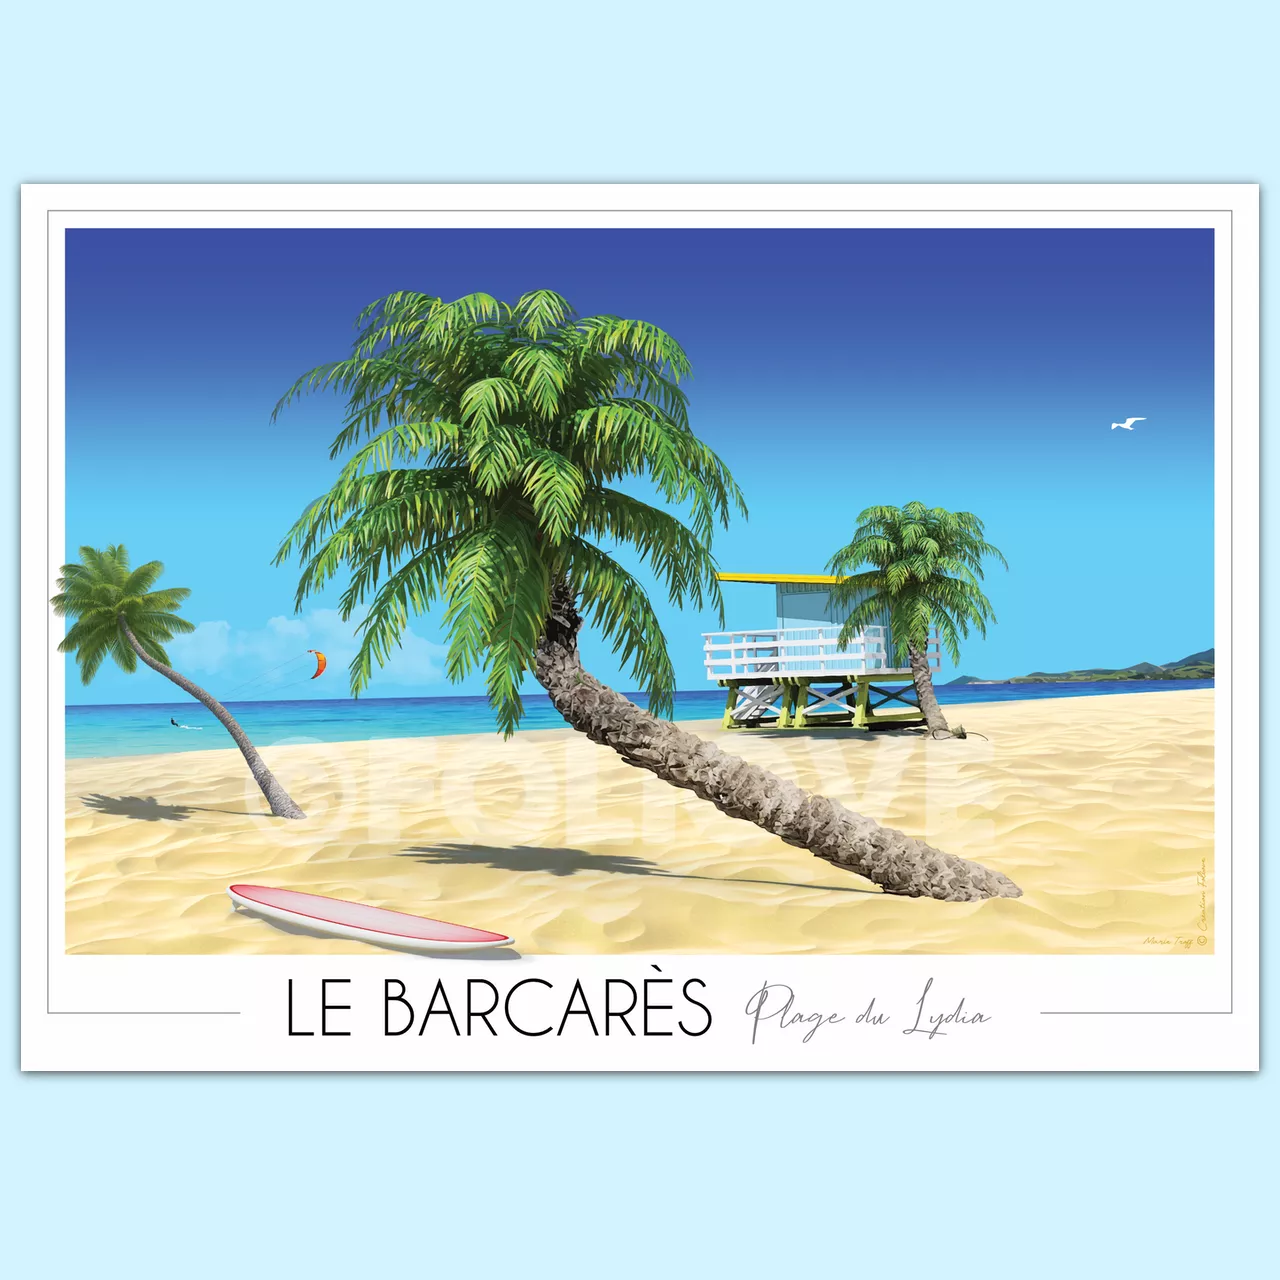 Affiche Port Leucate Ponton, Travel Poster, Art mural